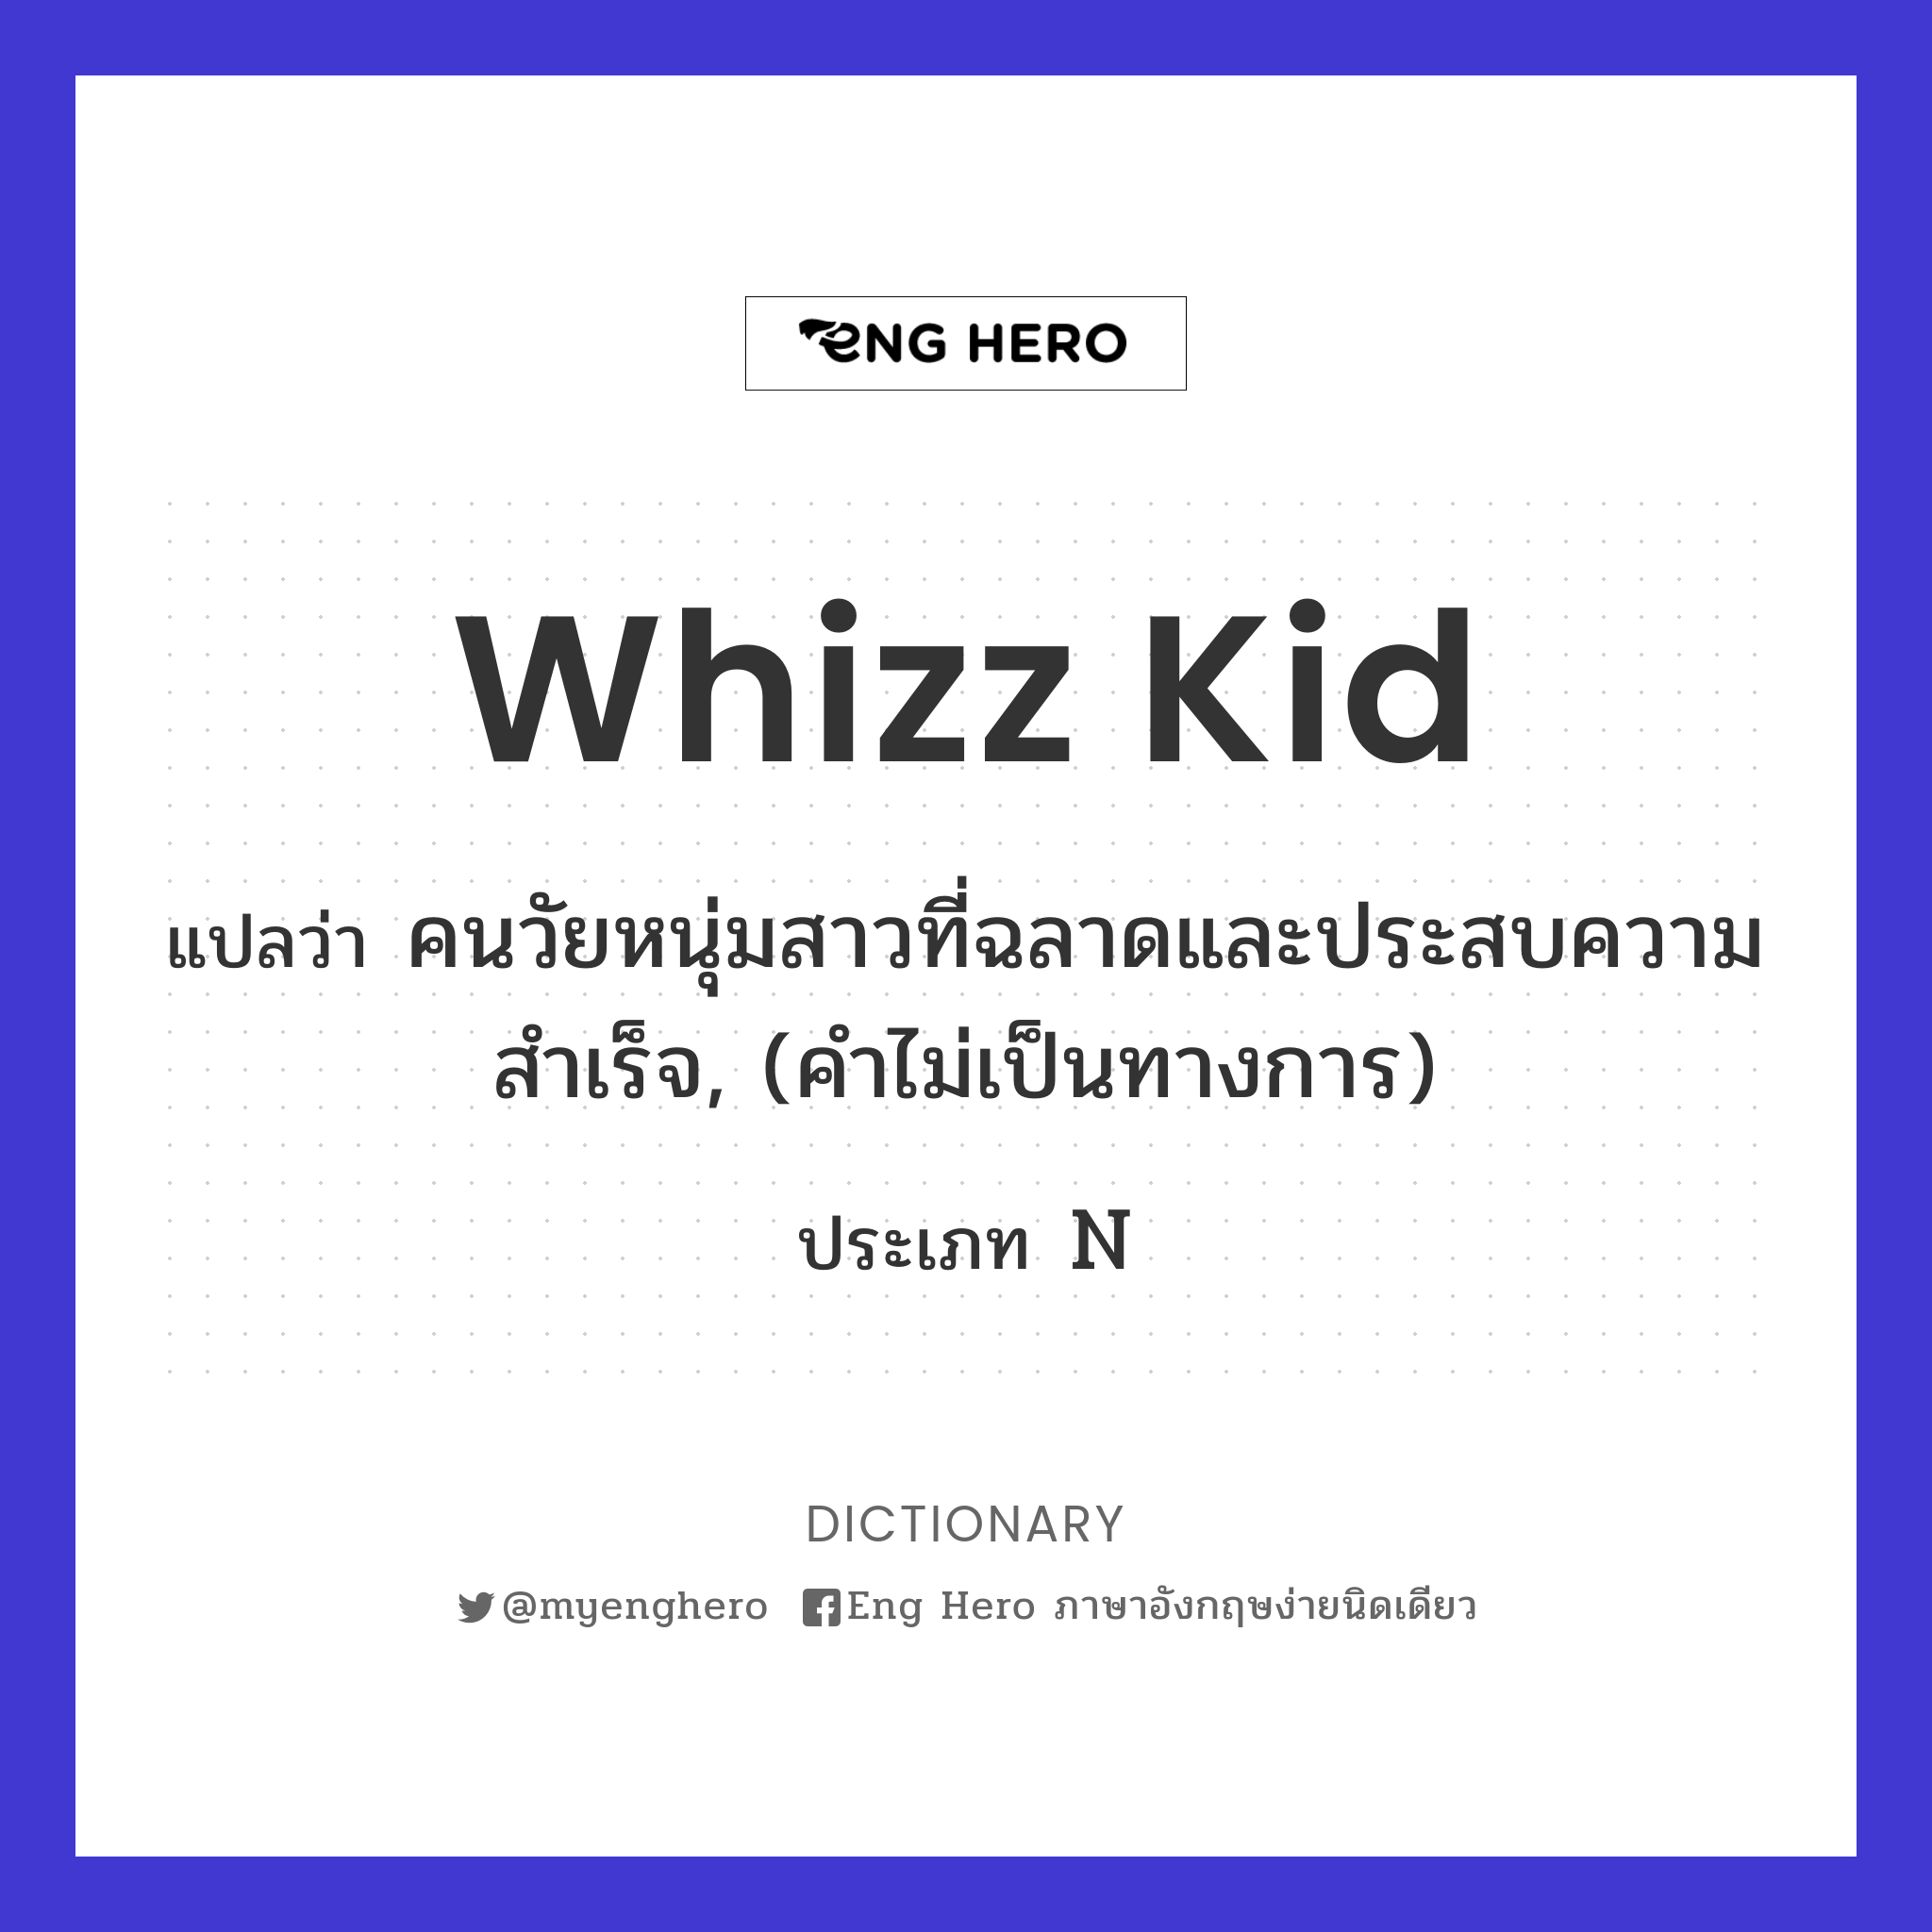 whizz kid